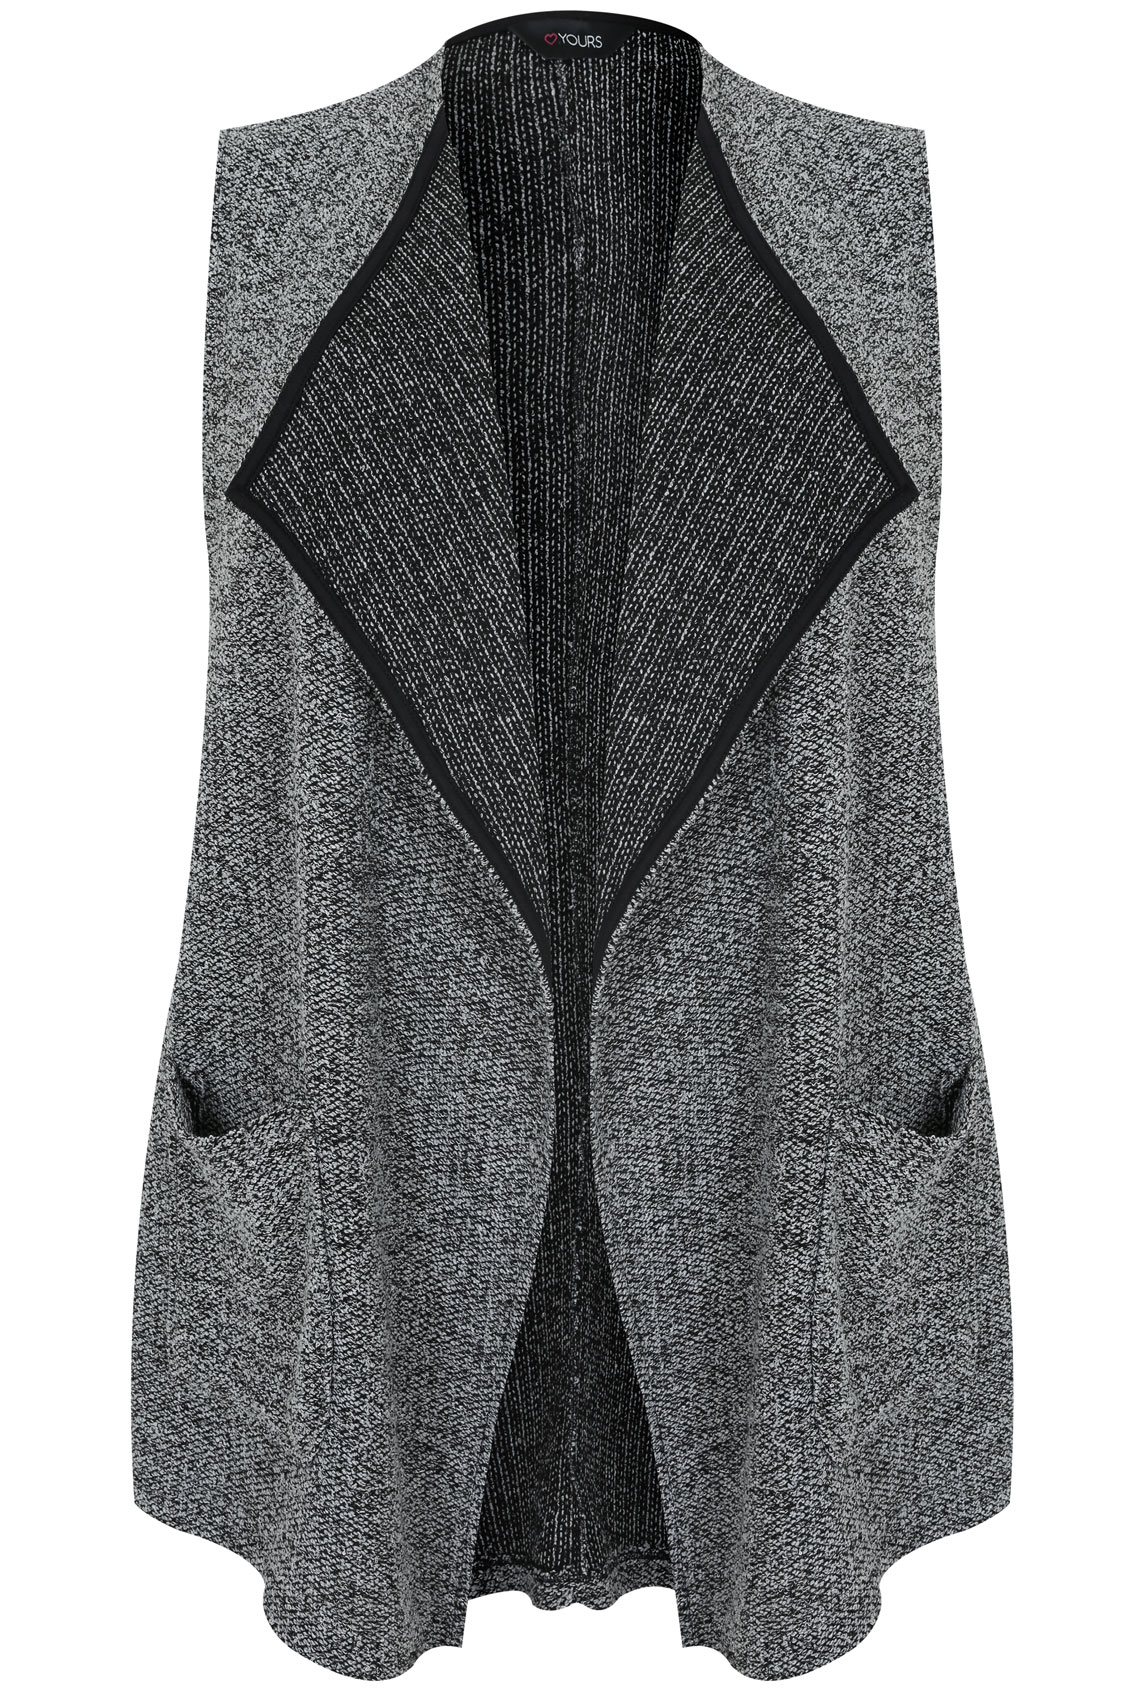 Grey & Black Bouclé Sleeveless Jacket plus size 16,18,20,22,24,26,28,30,32